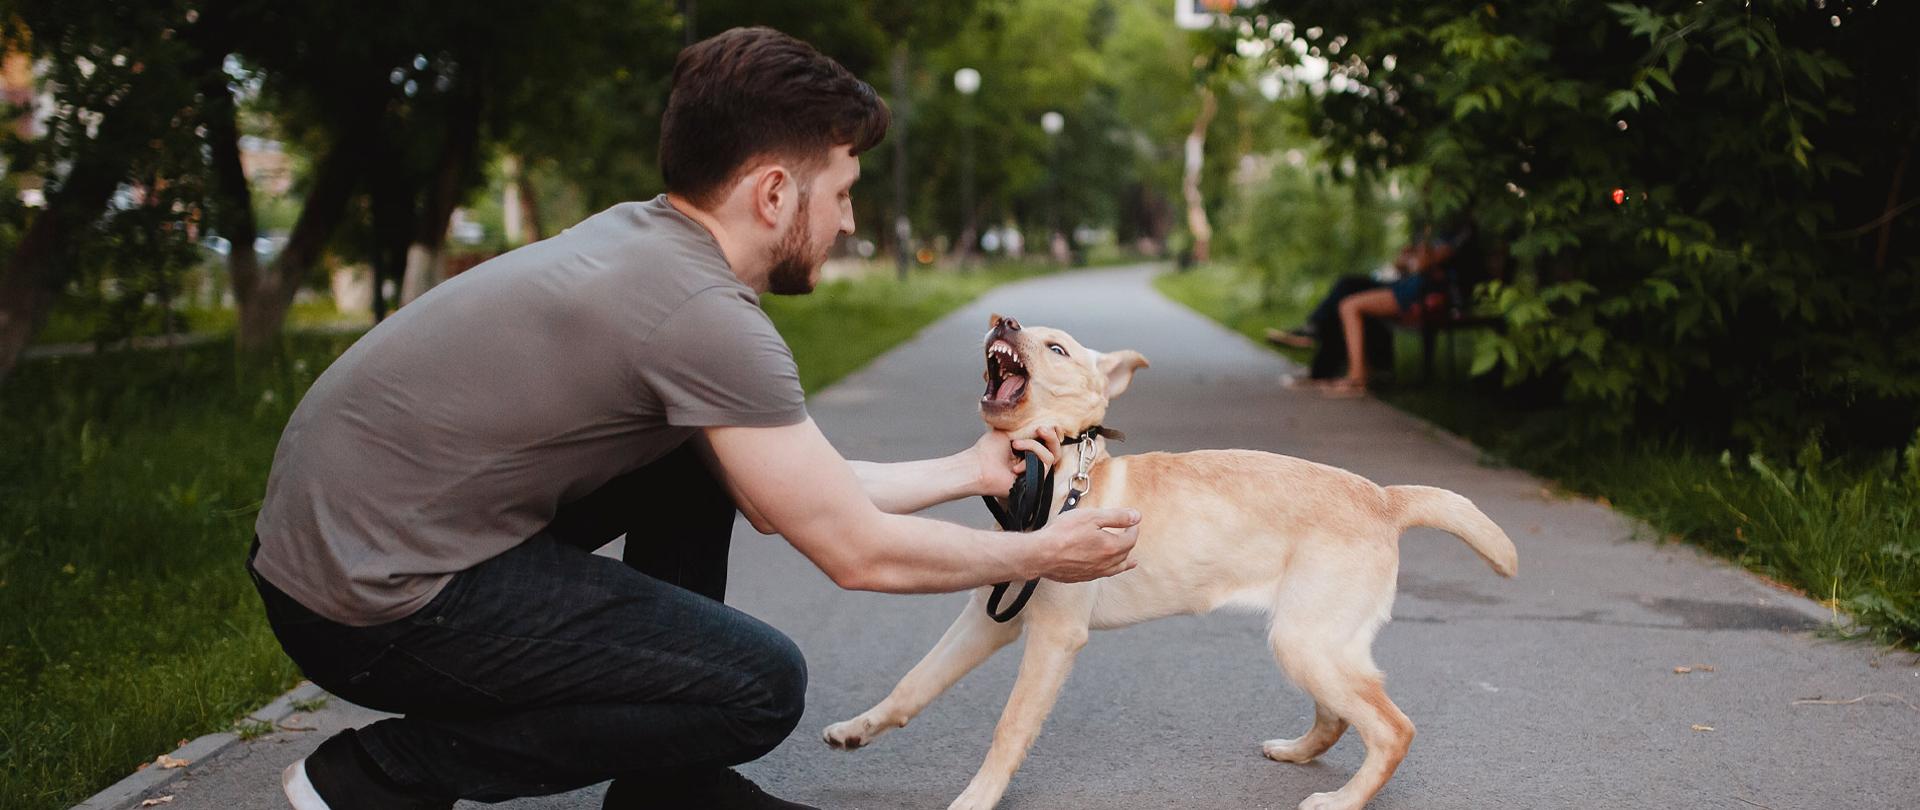 Kucający mężczyzna przytrzymuje wściekłego, szczerzącego zęby psa